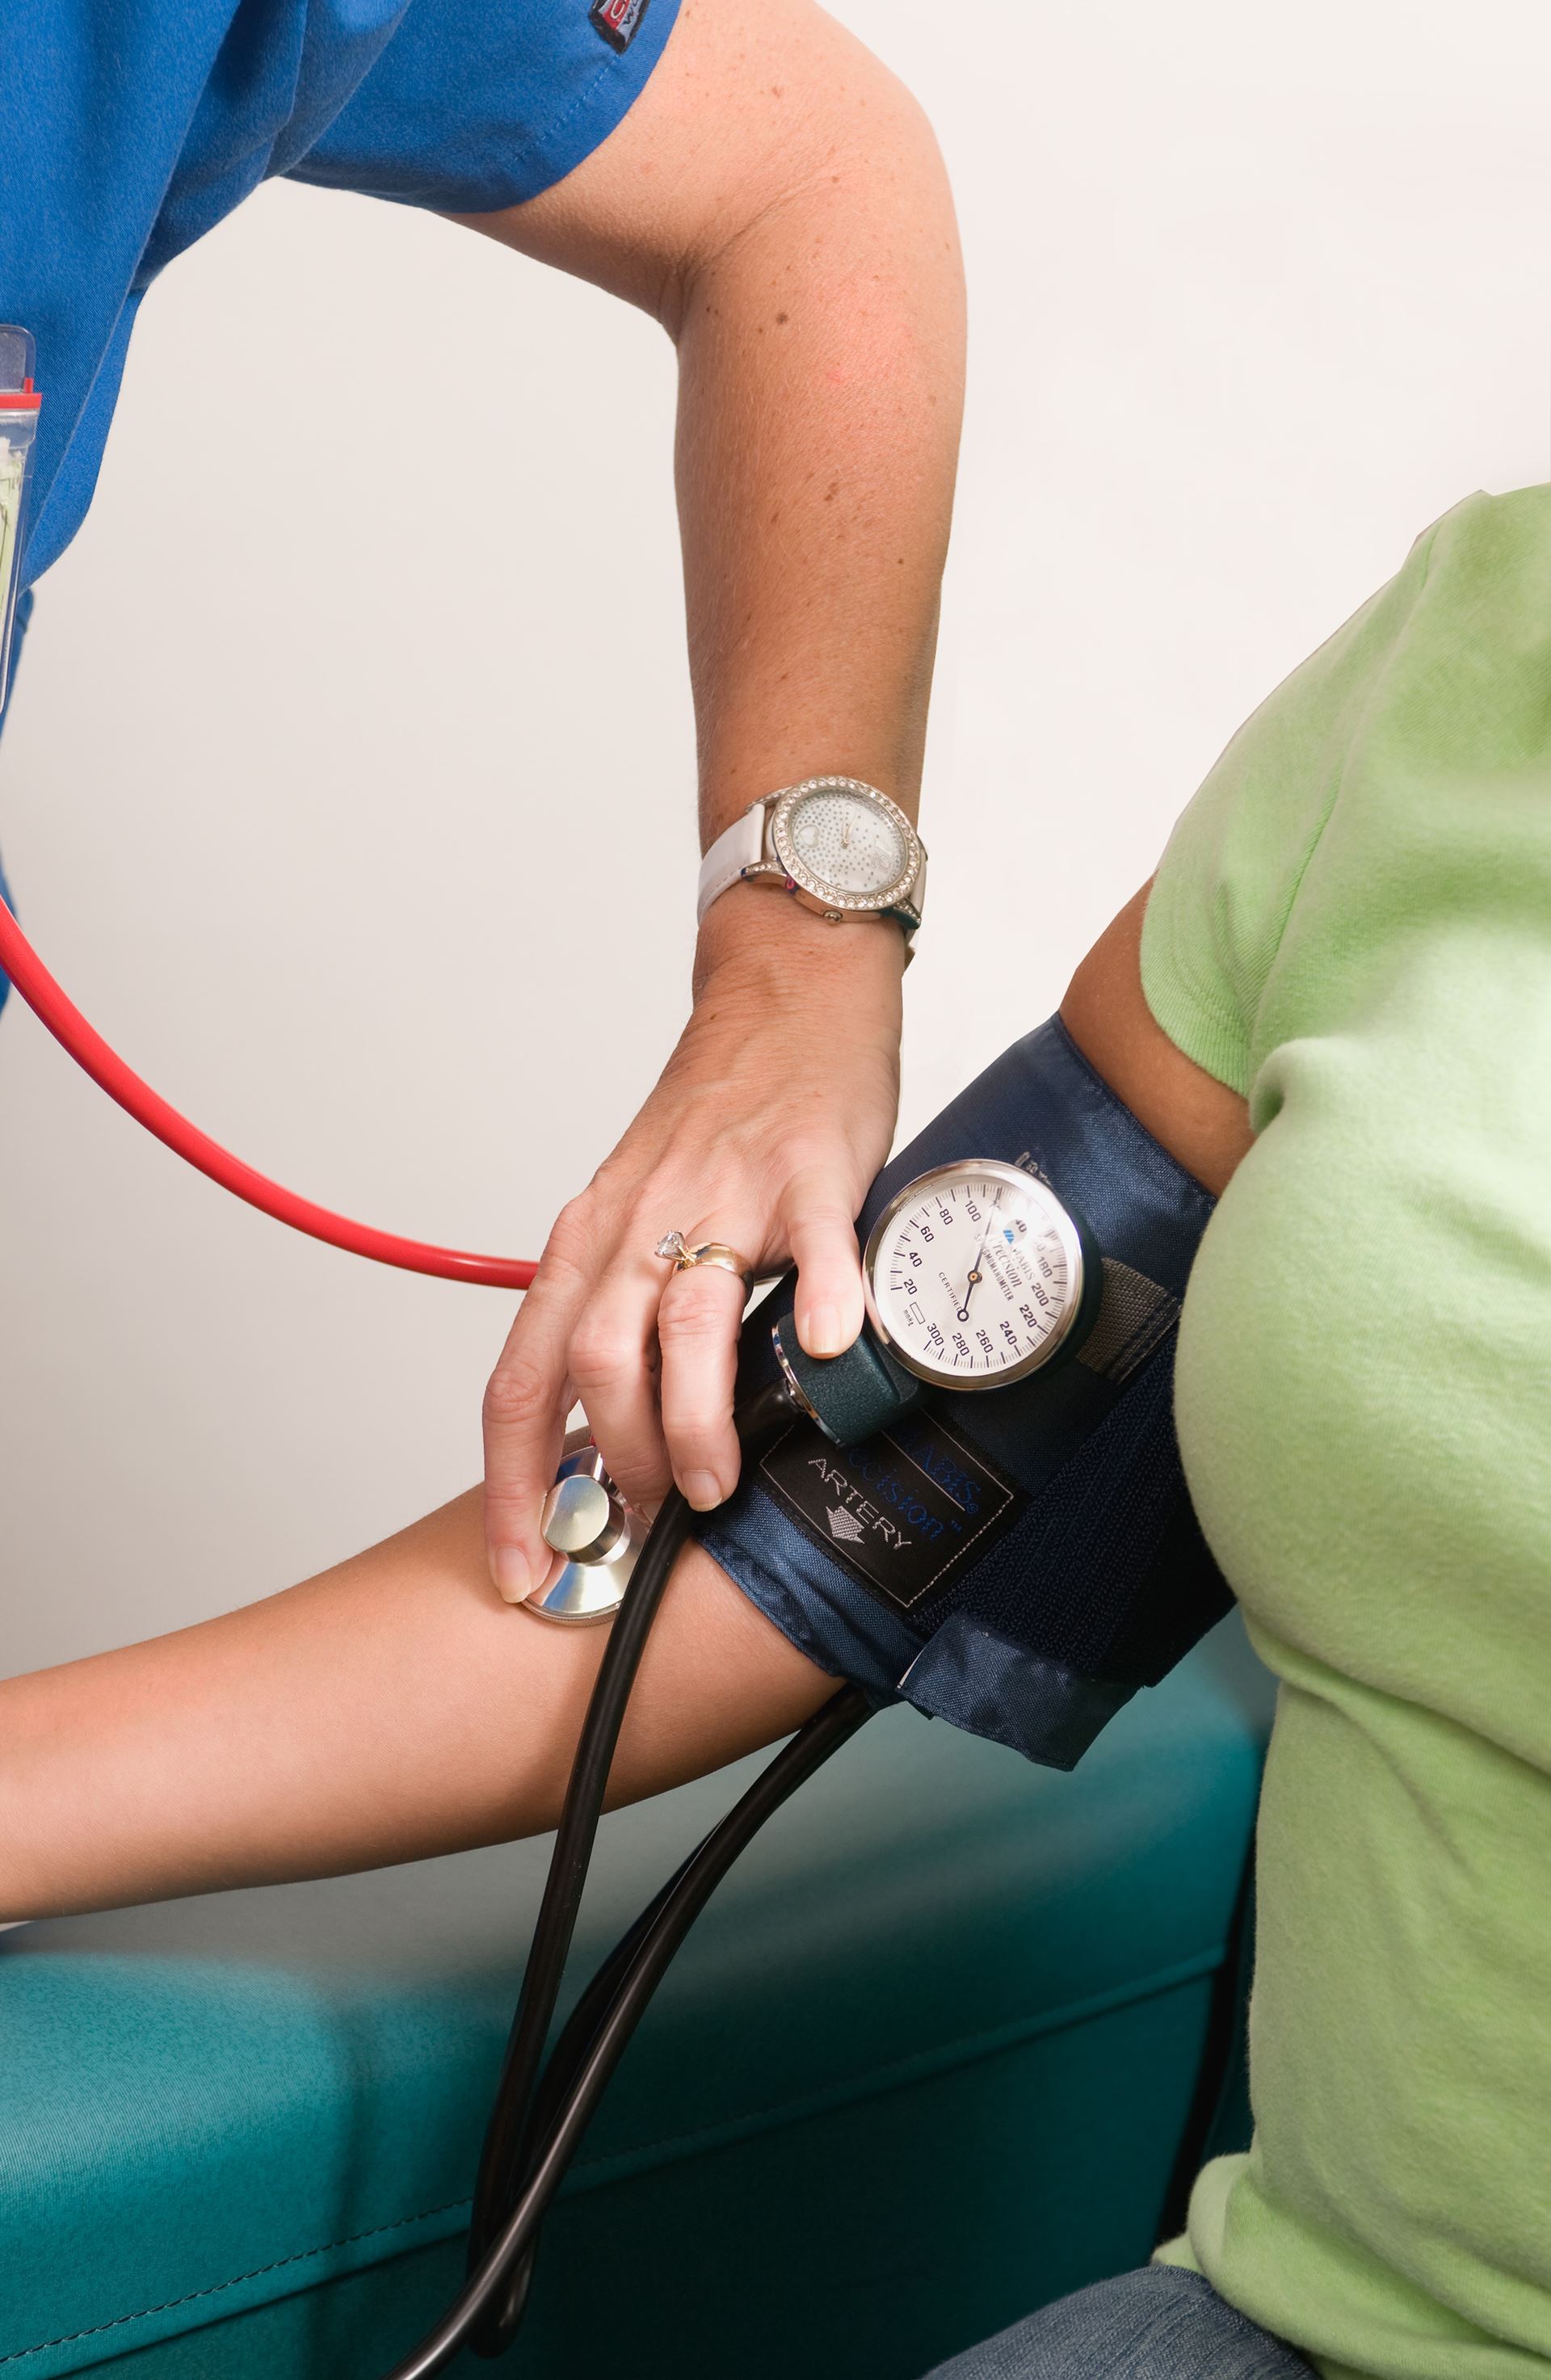 Blood Pressure, Hypertension Form